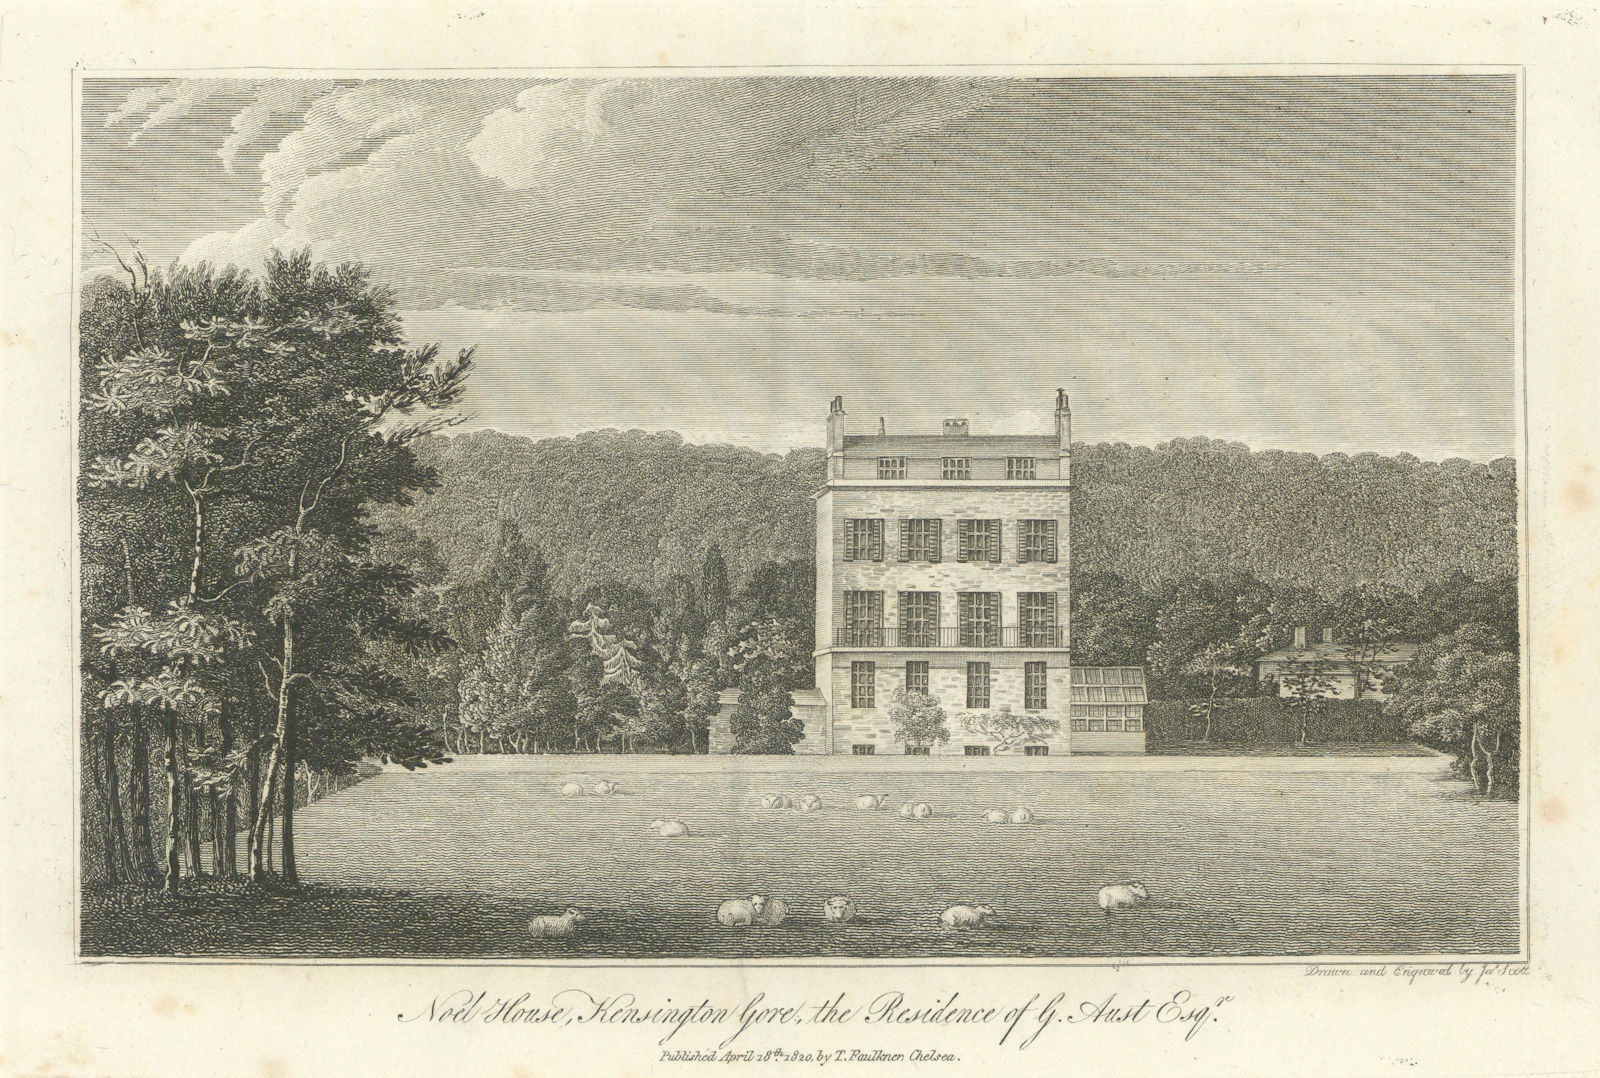 Noel House, Kensington Gore by Thomas Faulkner. Redeveloped 1861. 1820 print